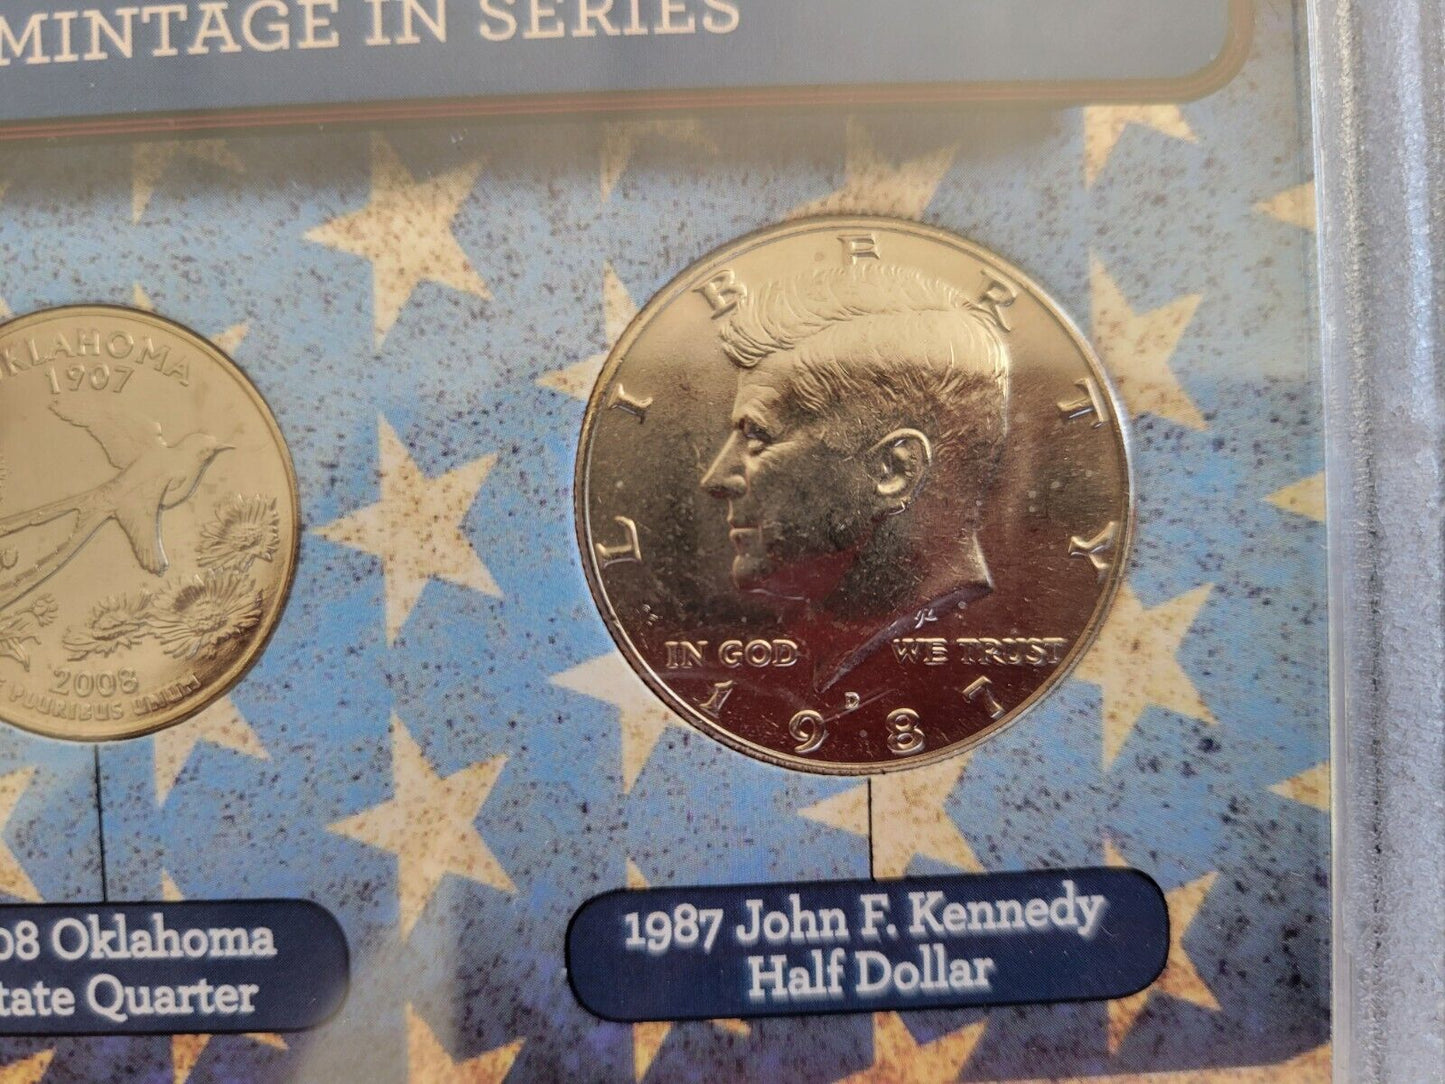 Americas Rarest Coins Set 1955 Roosevelt Dime, 2008 Oklahoma Quarter, 1987 Half